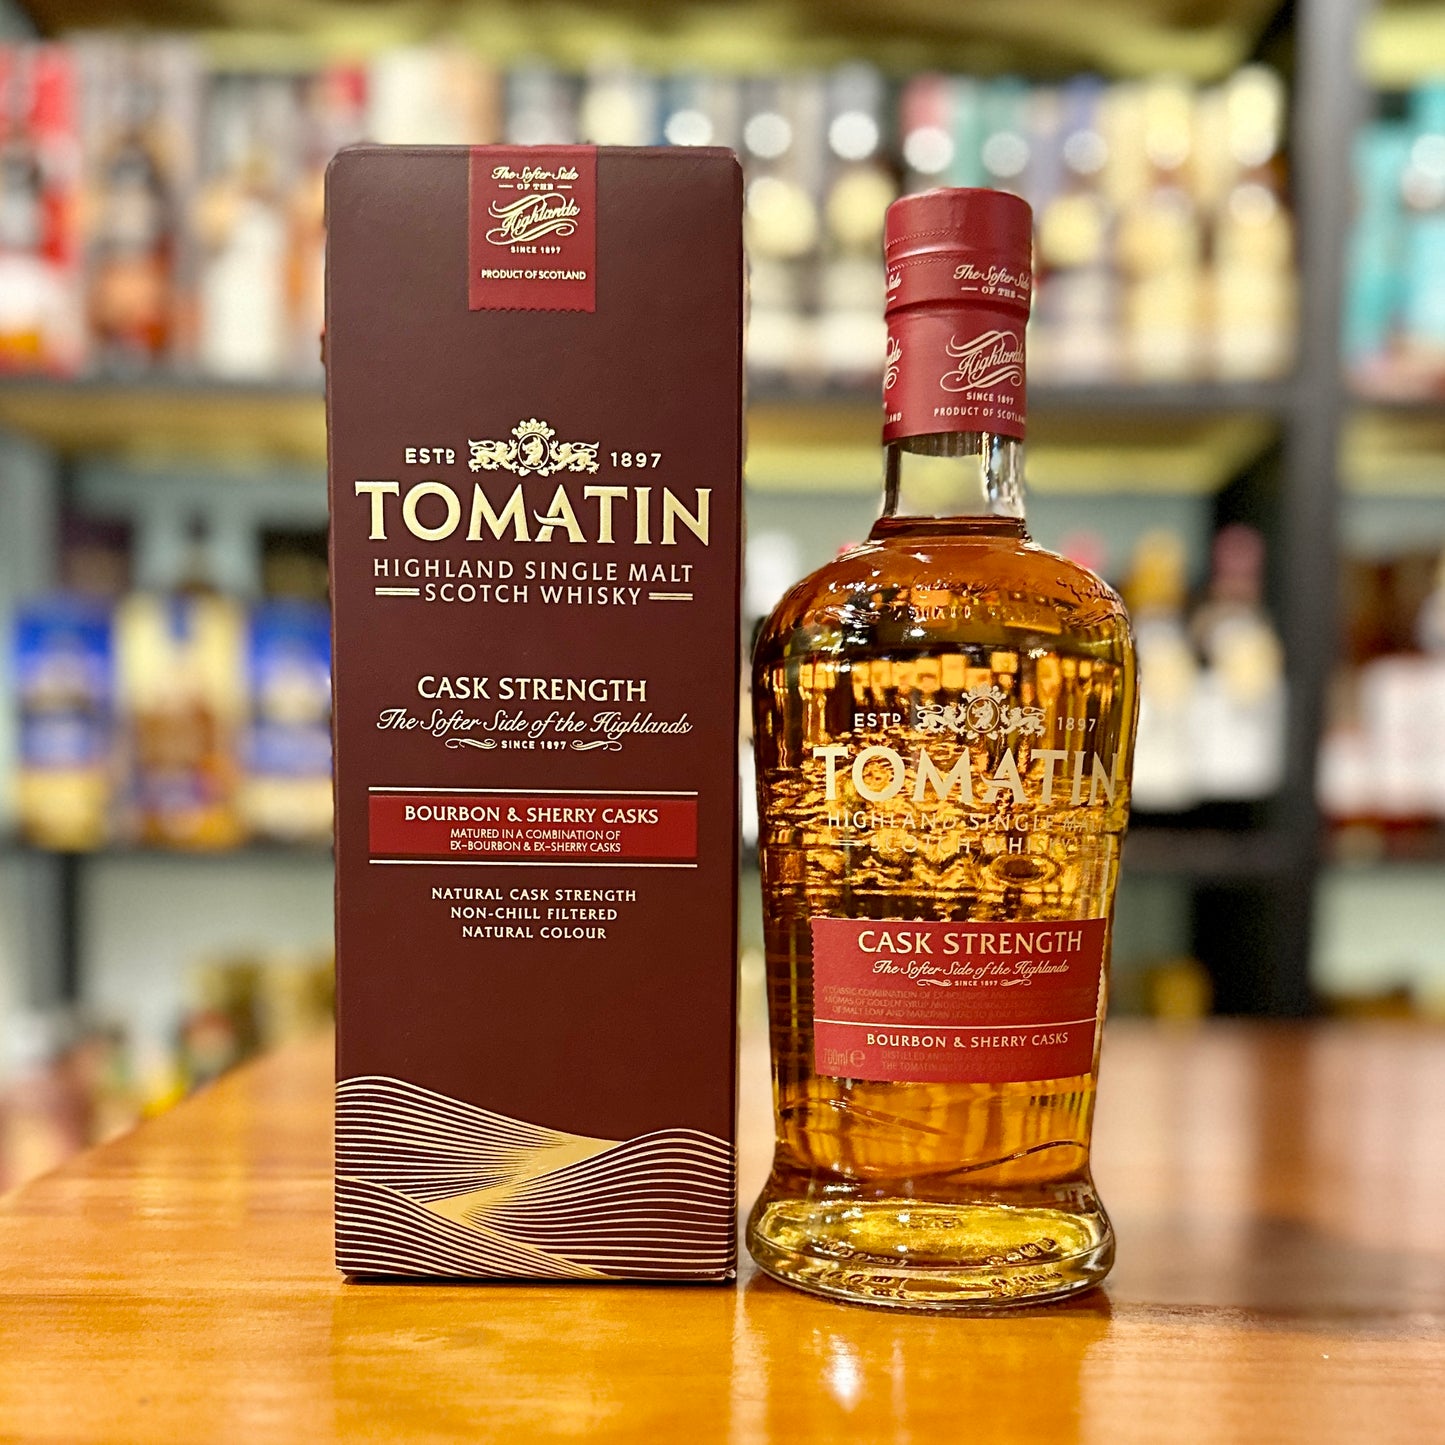 Tomatin Cask Strength Single Malt Scotch Whisky